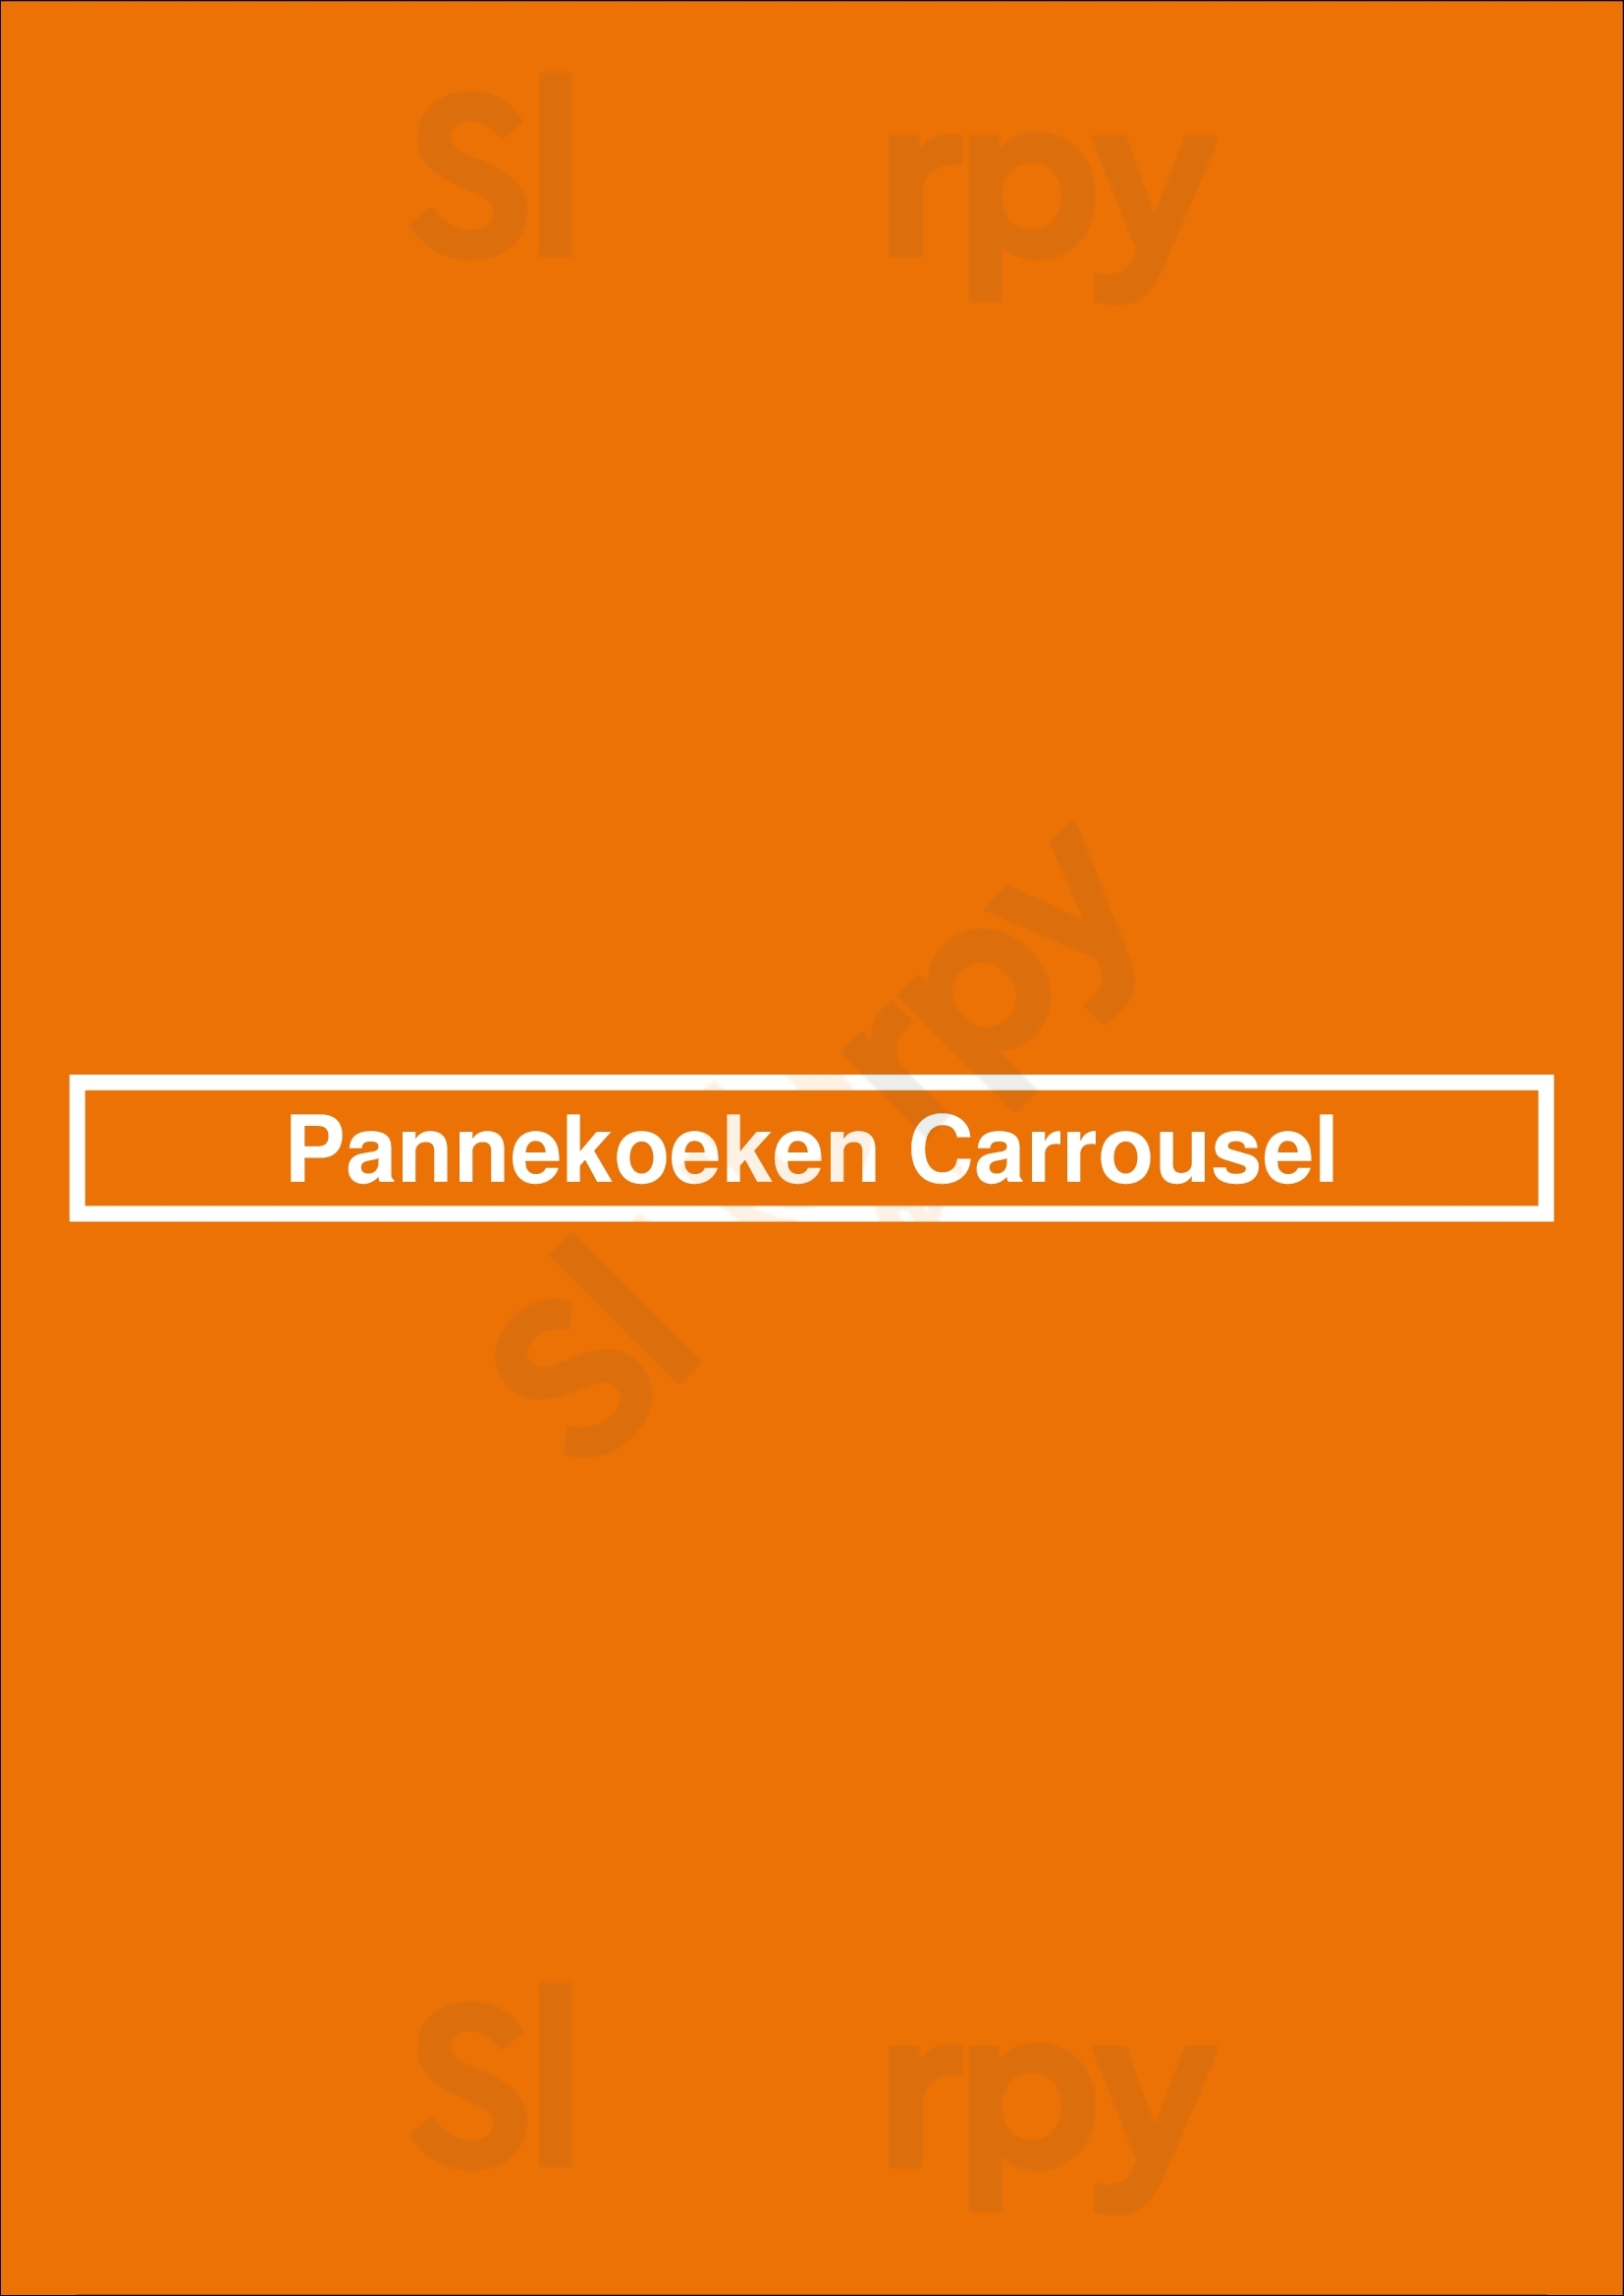 Pannekoeken Carrousel Roosendaal Menu - 1